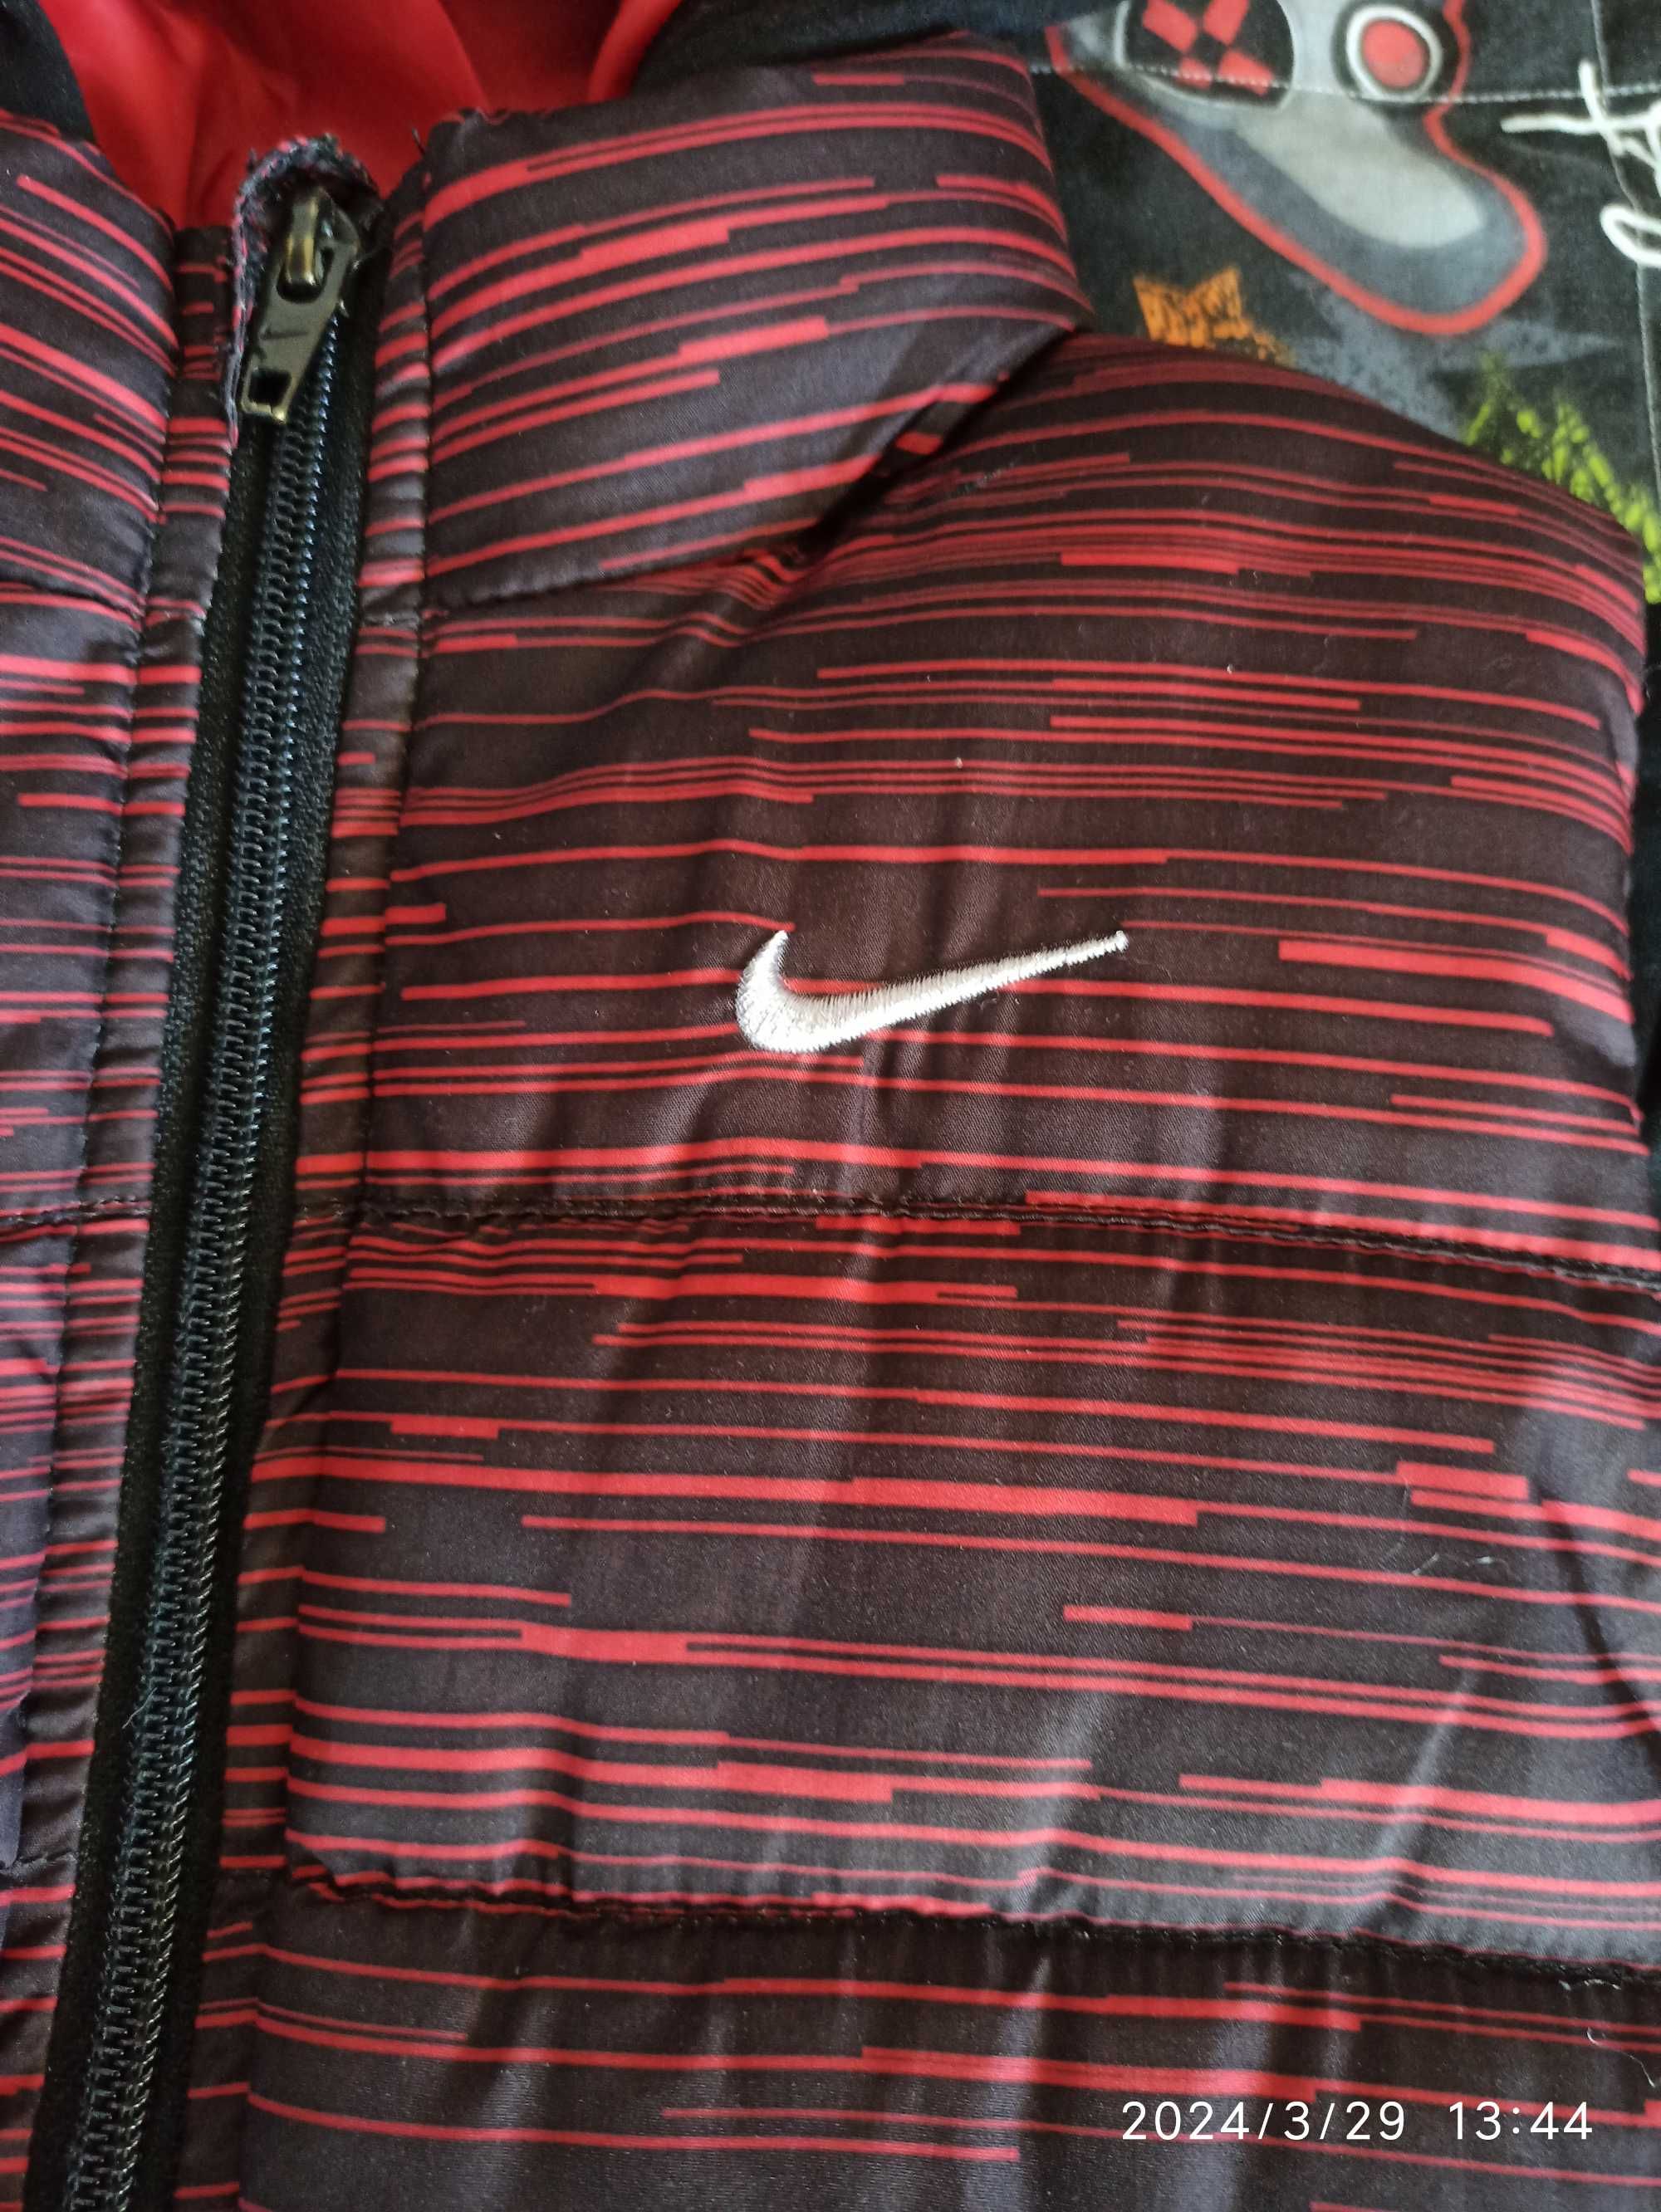 Kurtka przejściowa chłopięca Nike bluza razem z kamizelką 4 lata